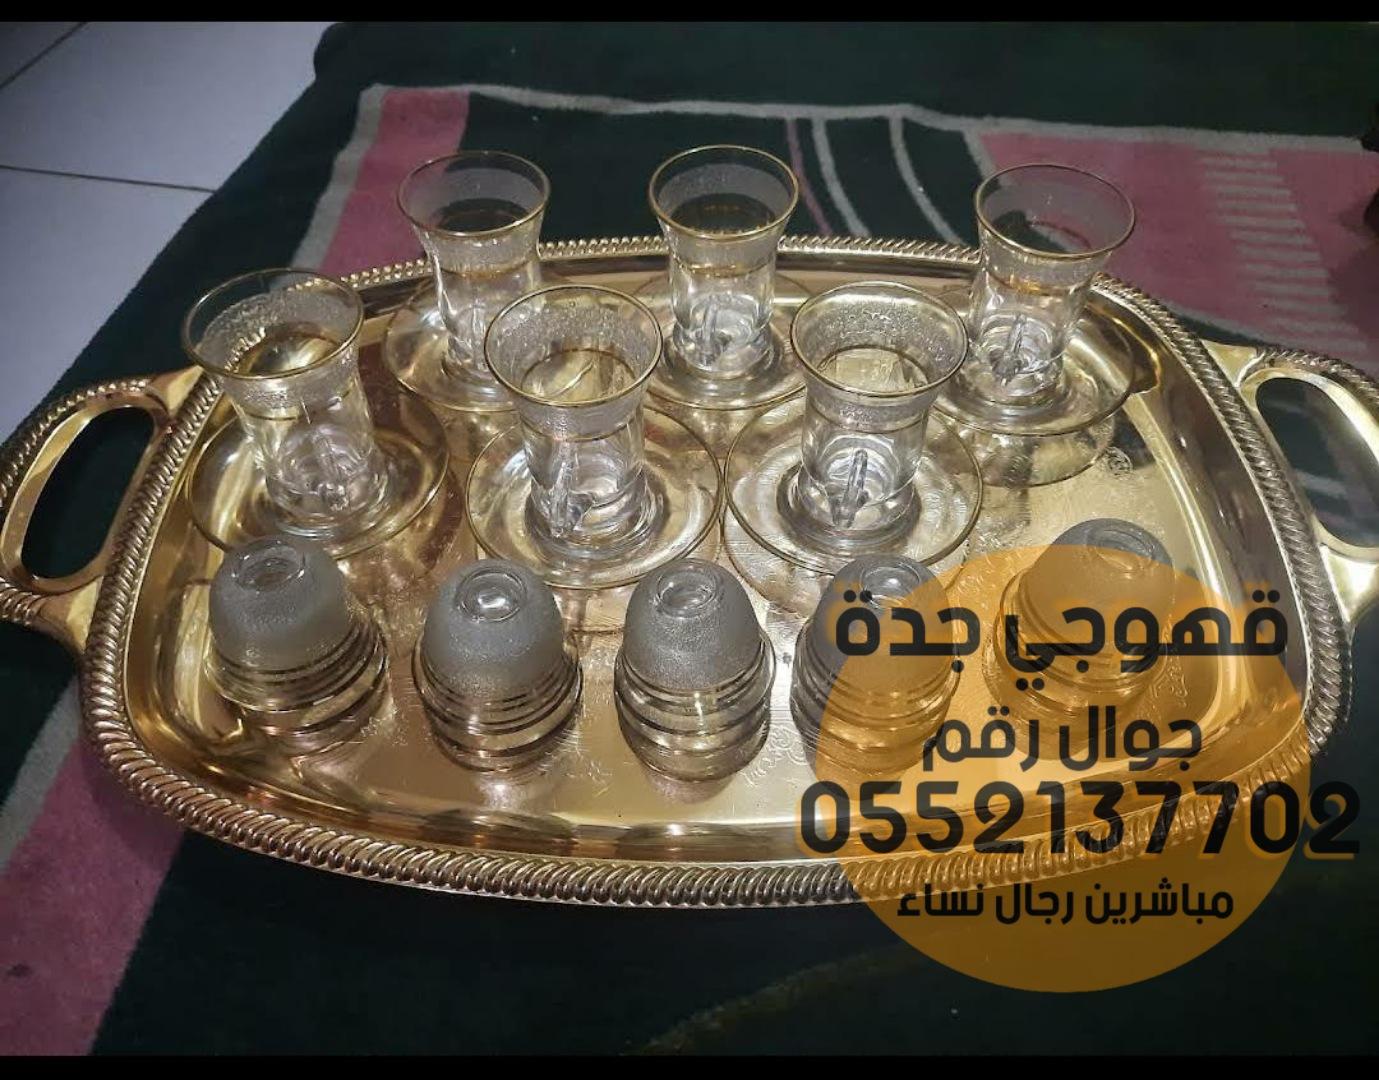 قهوجي وصبابين قهوه في جدة,0552137702 332505000